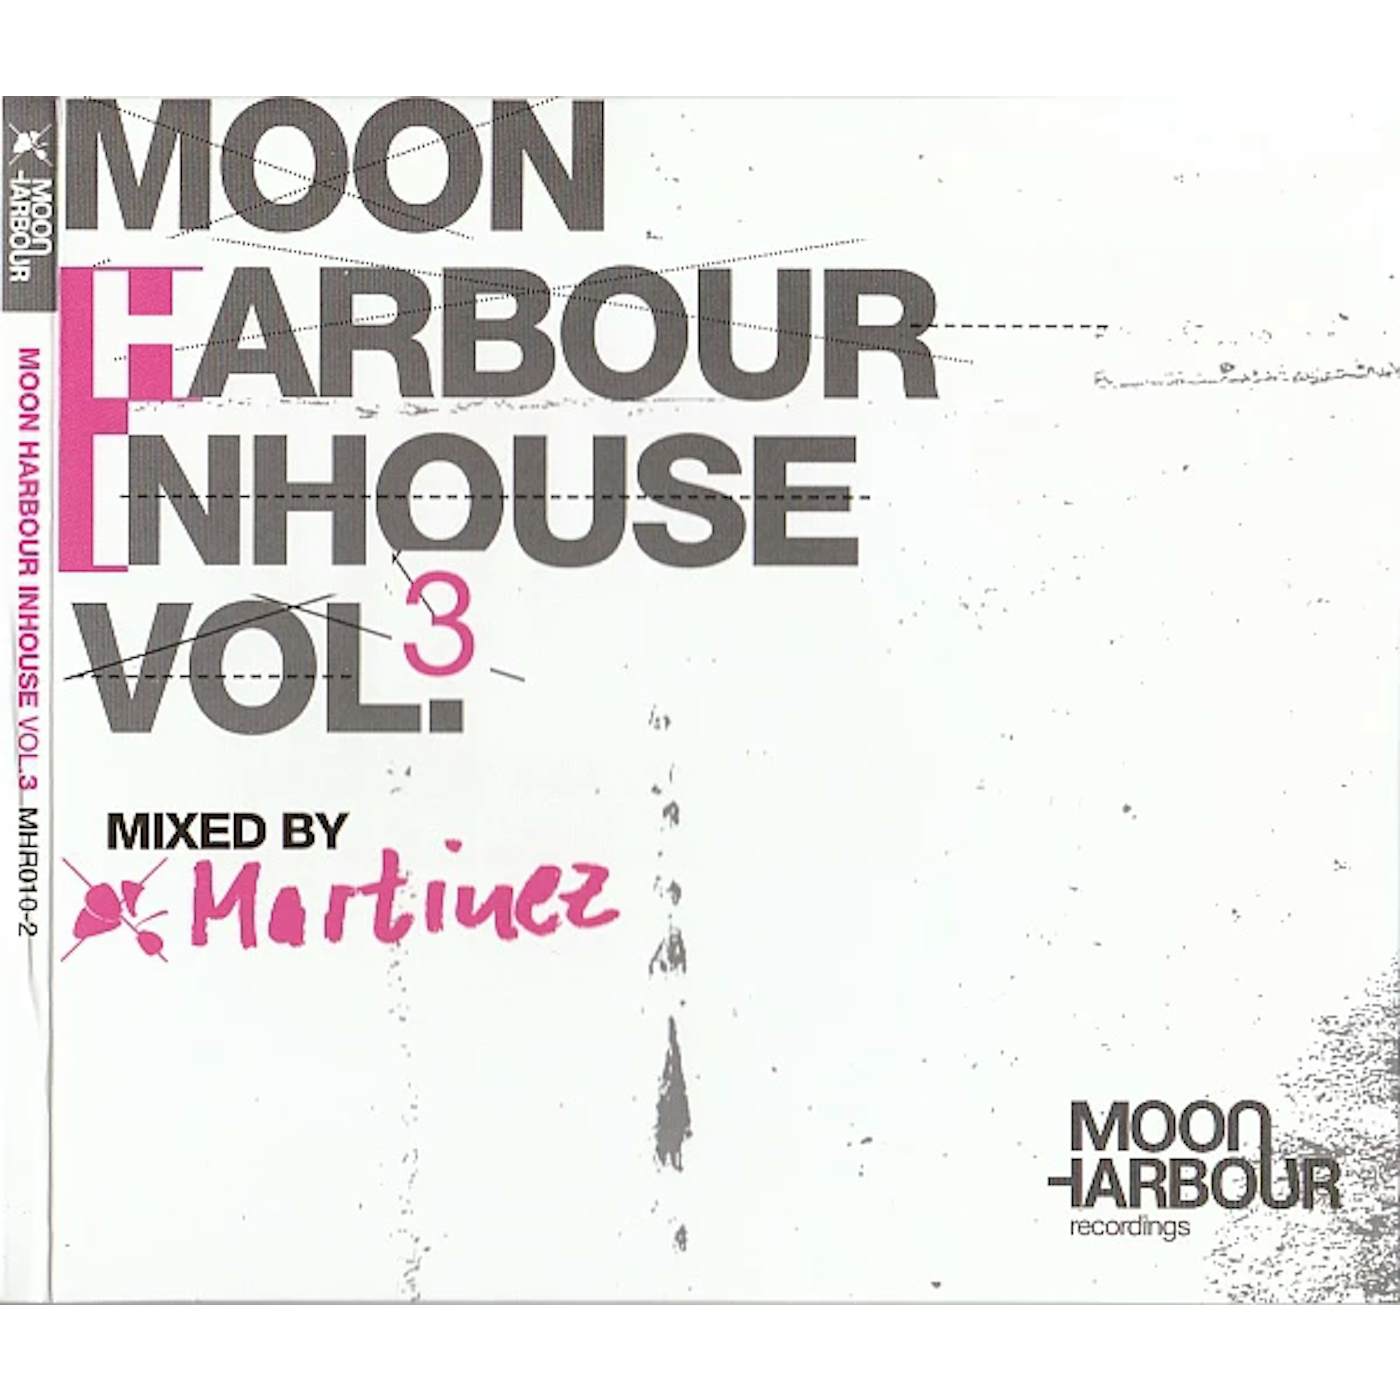 Martinez MOON HARBOUR INHOUSE 3 Vinyl Record